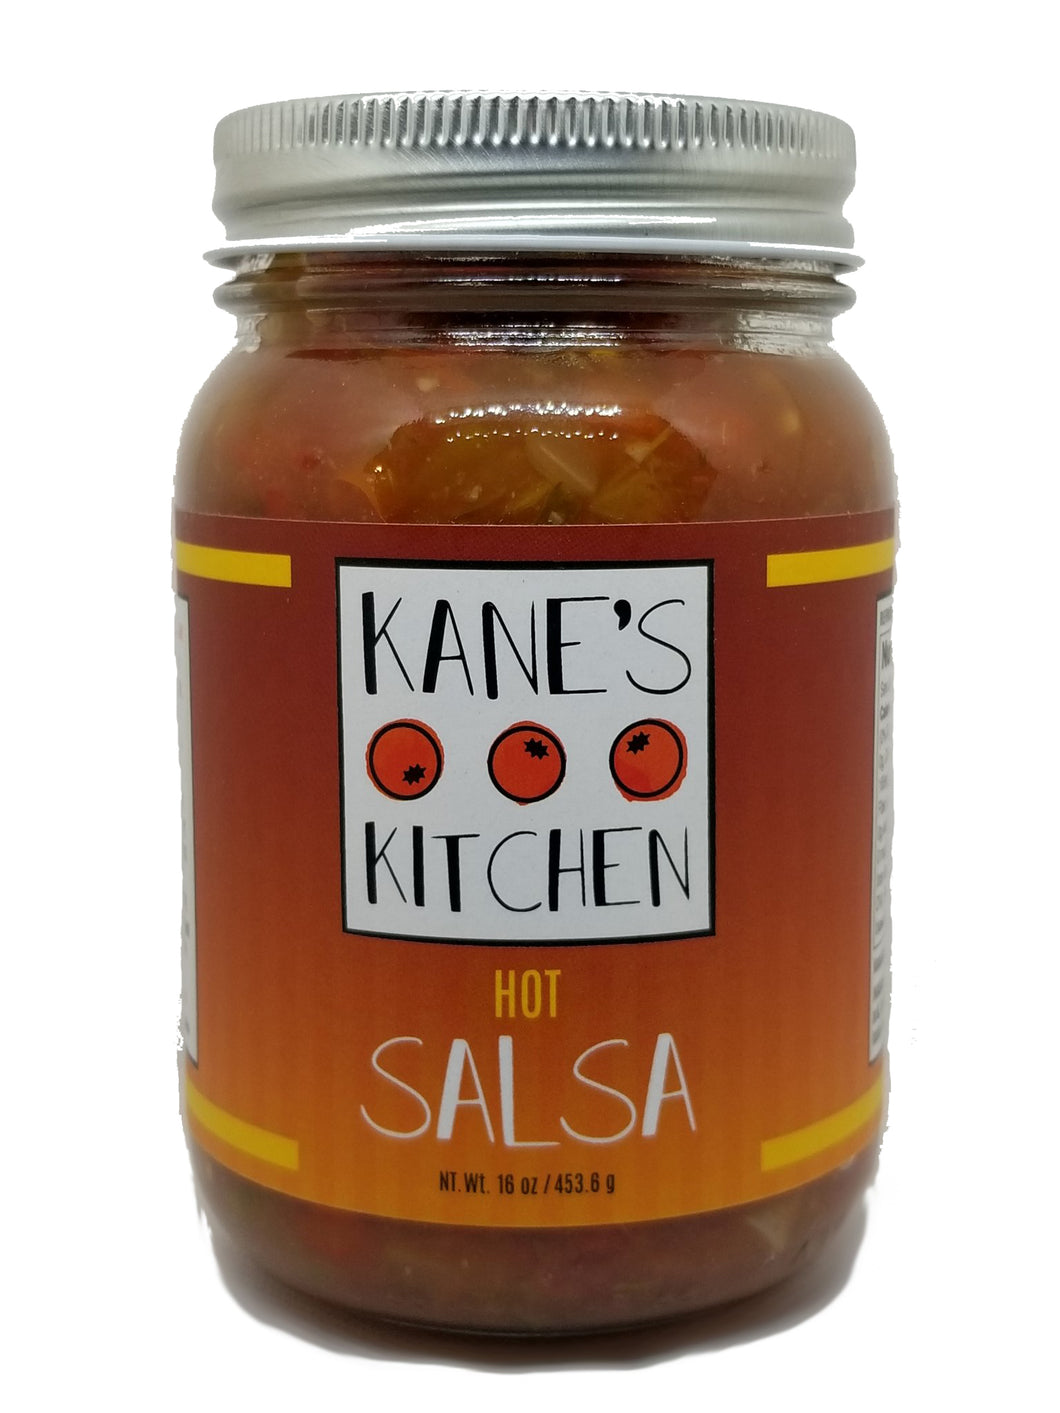 Hot Salsa – Kane's Kitchen Salsa